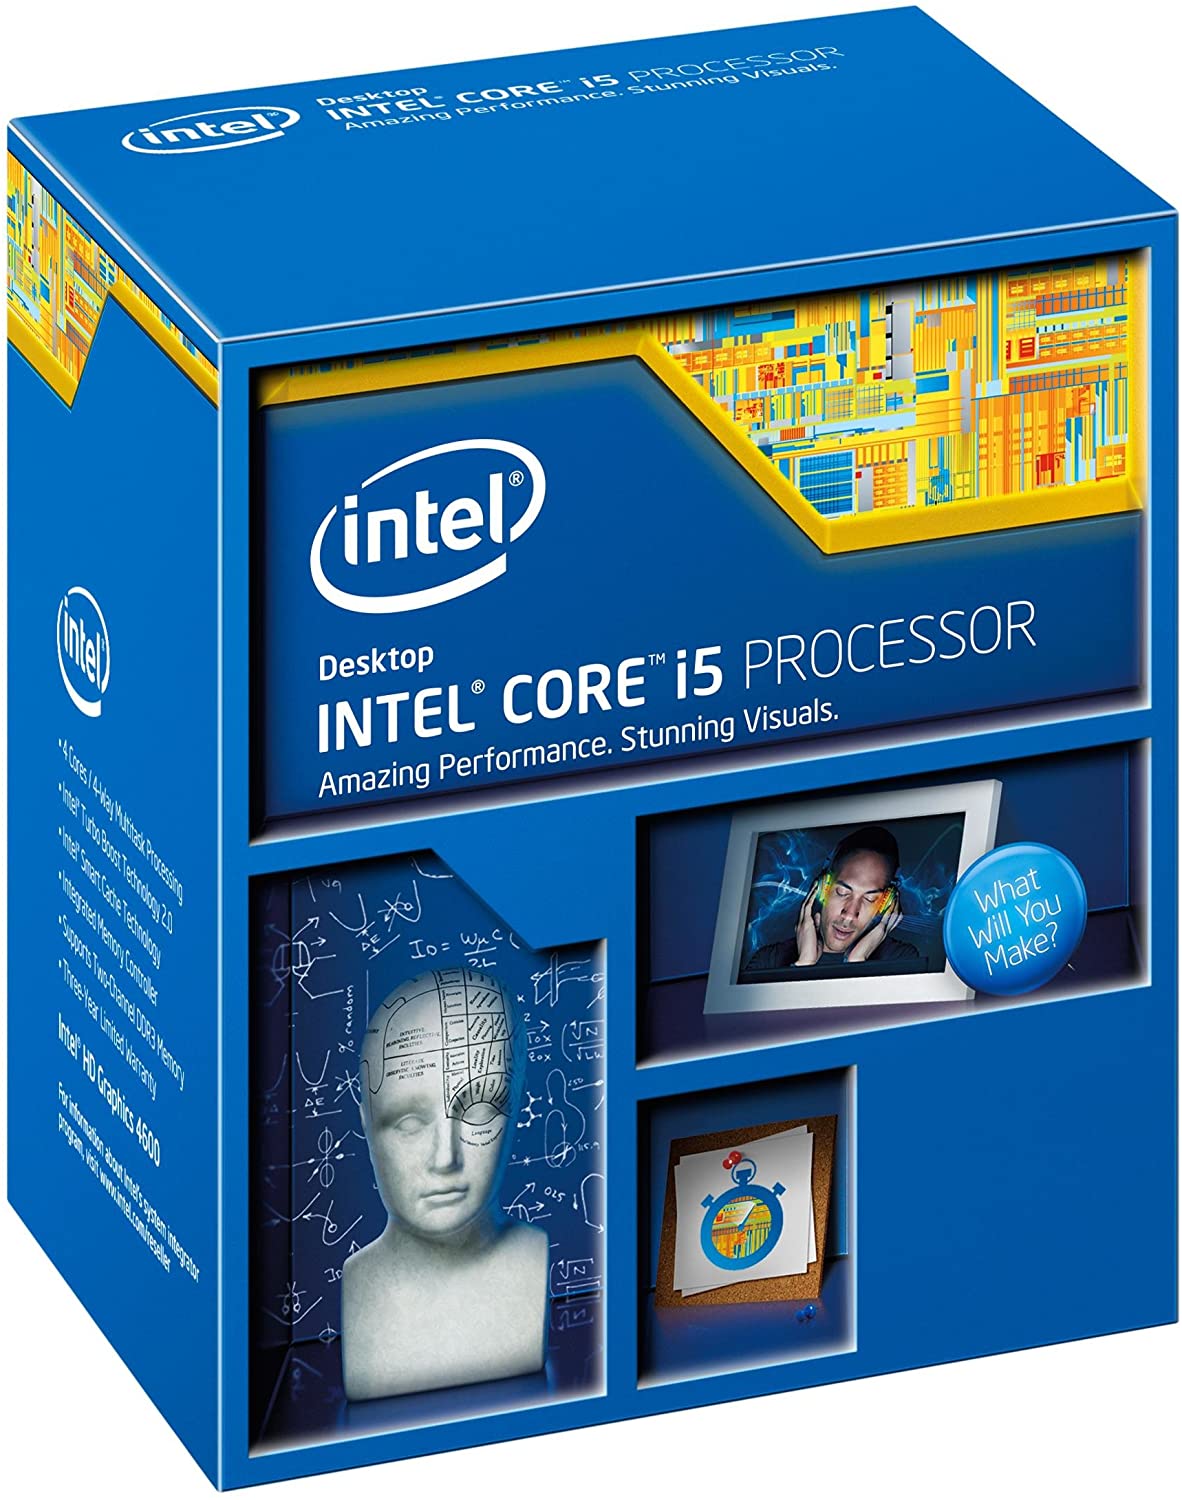 Intel Core i5-4460 Desktop Processor (BX80646I54460)